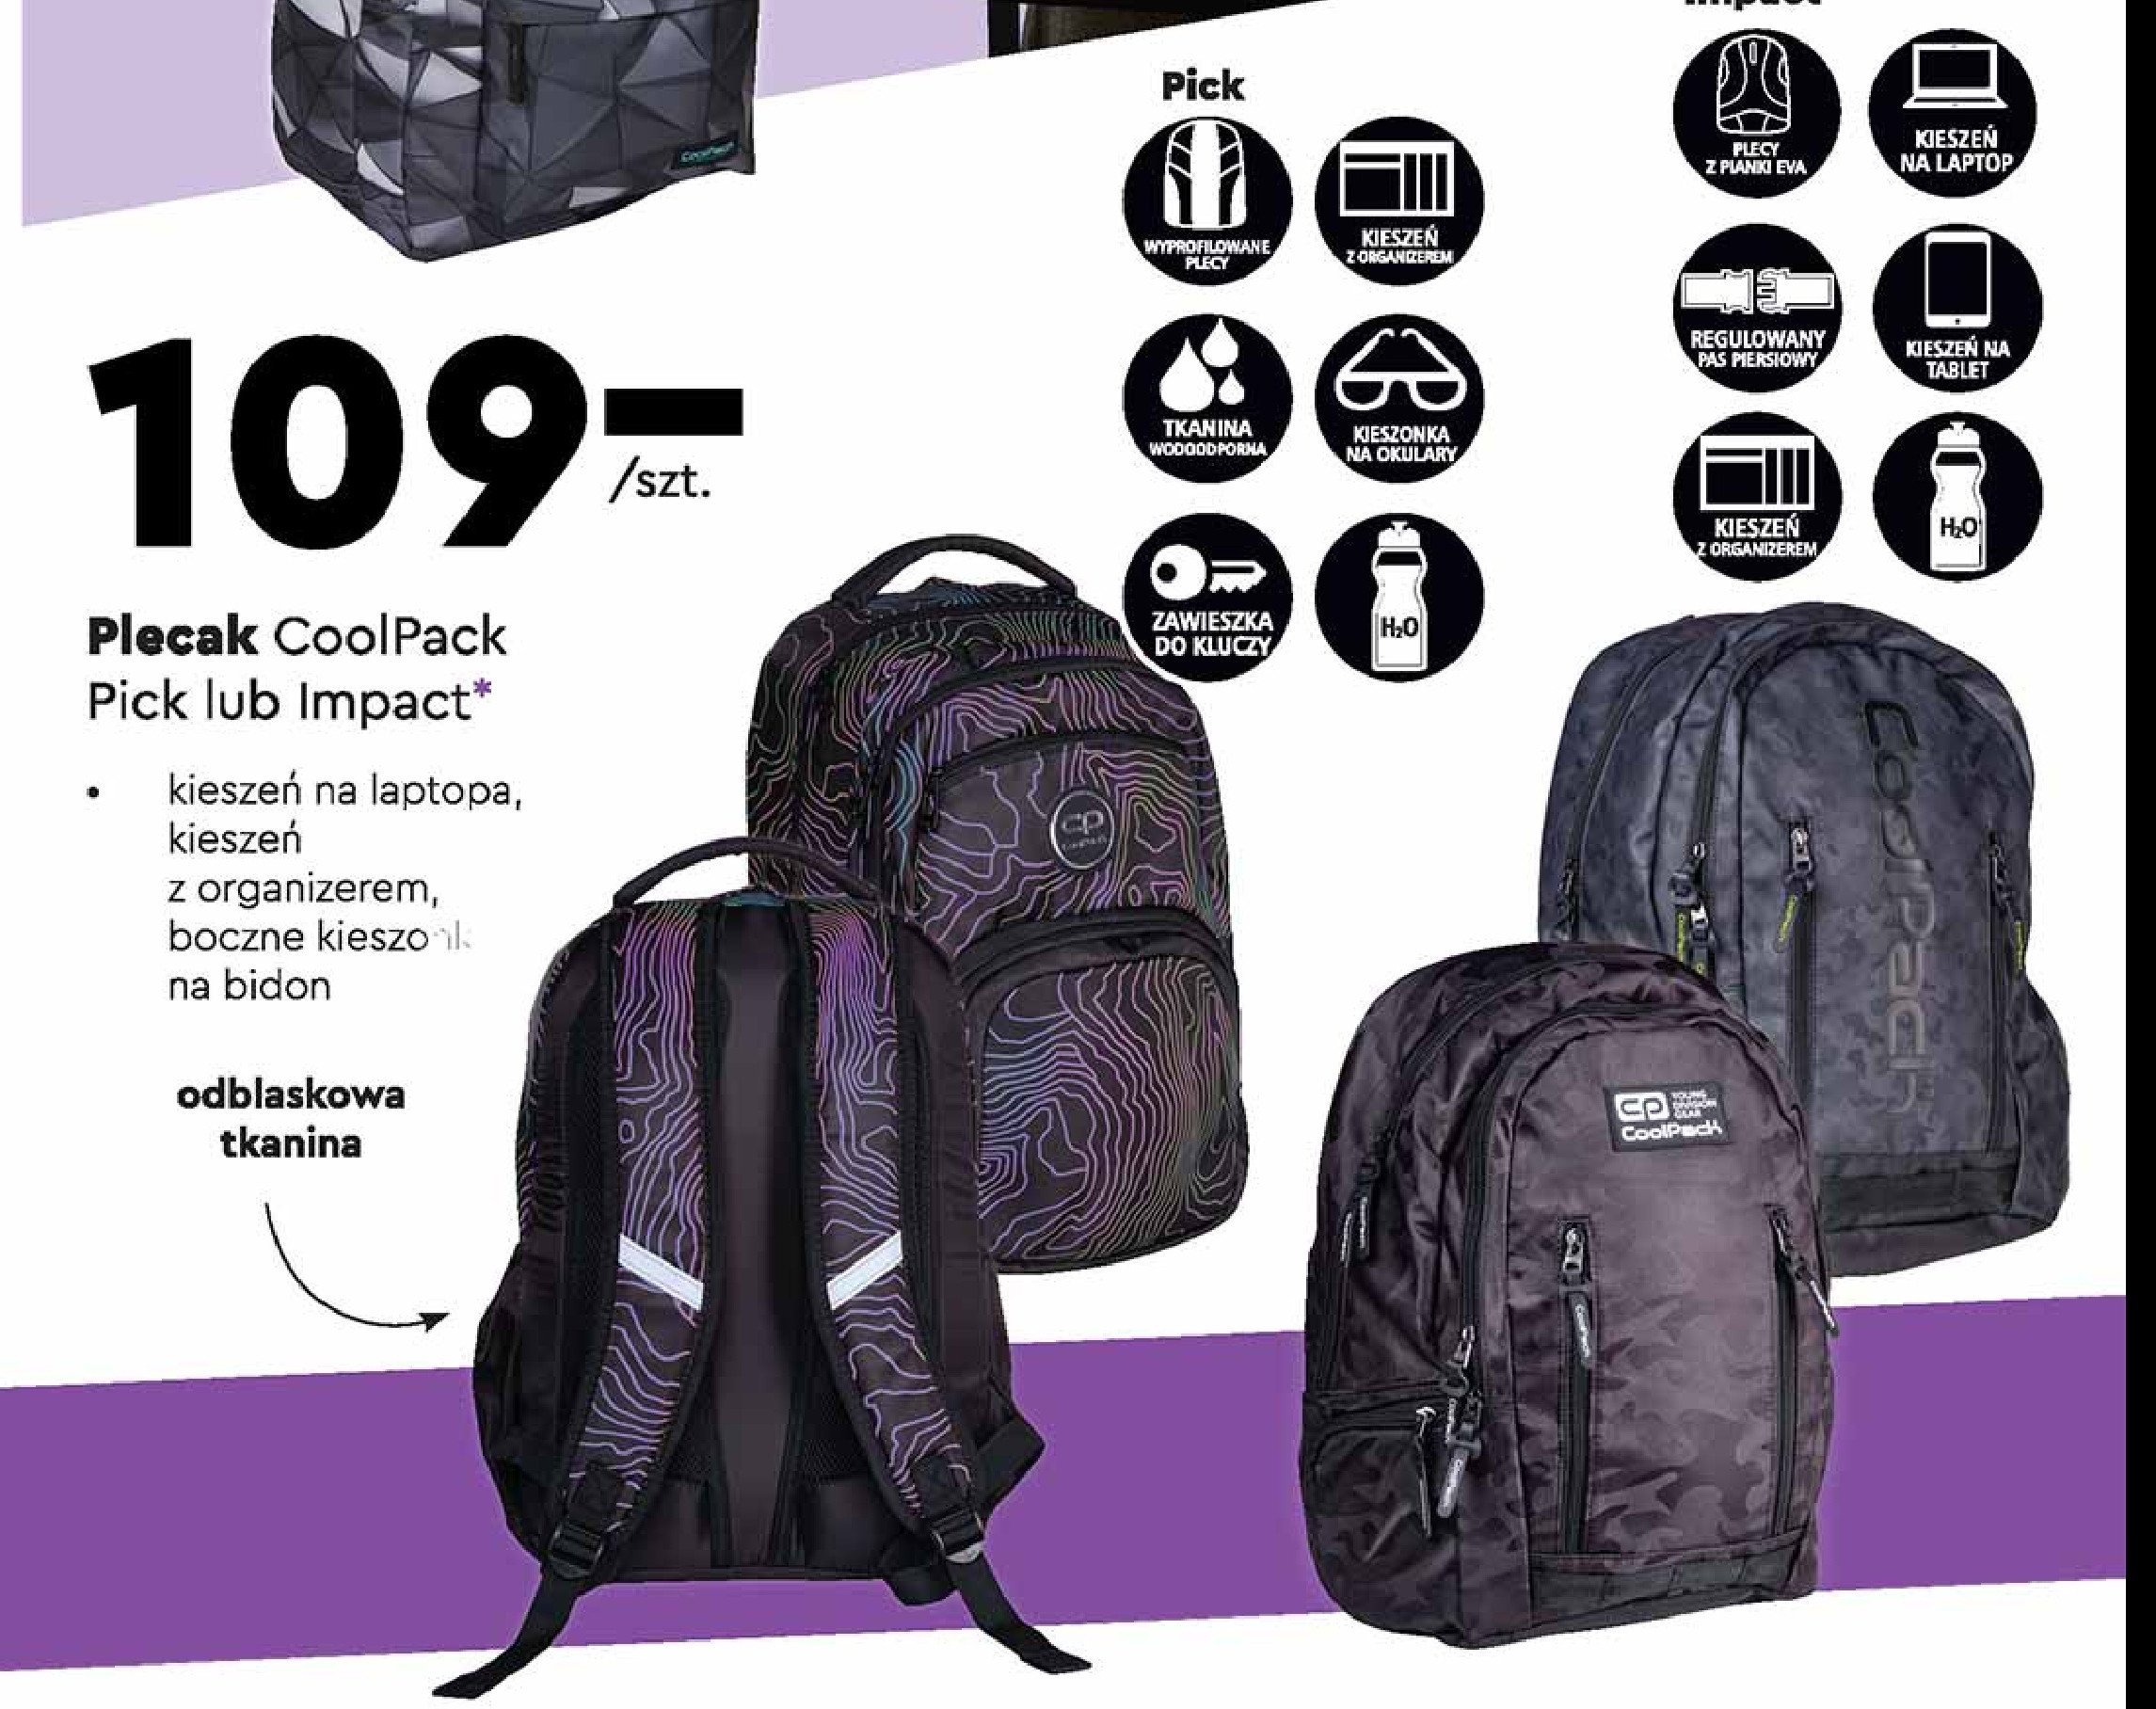 Plecak młodzieżowy impact Coolpack promocja